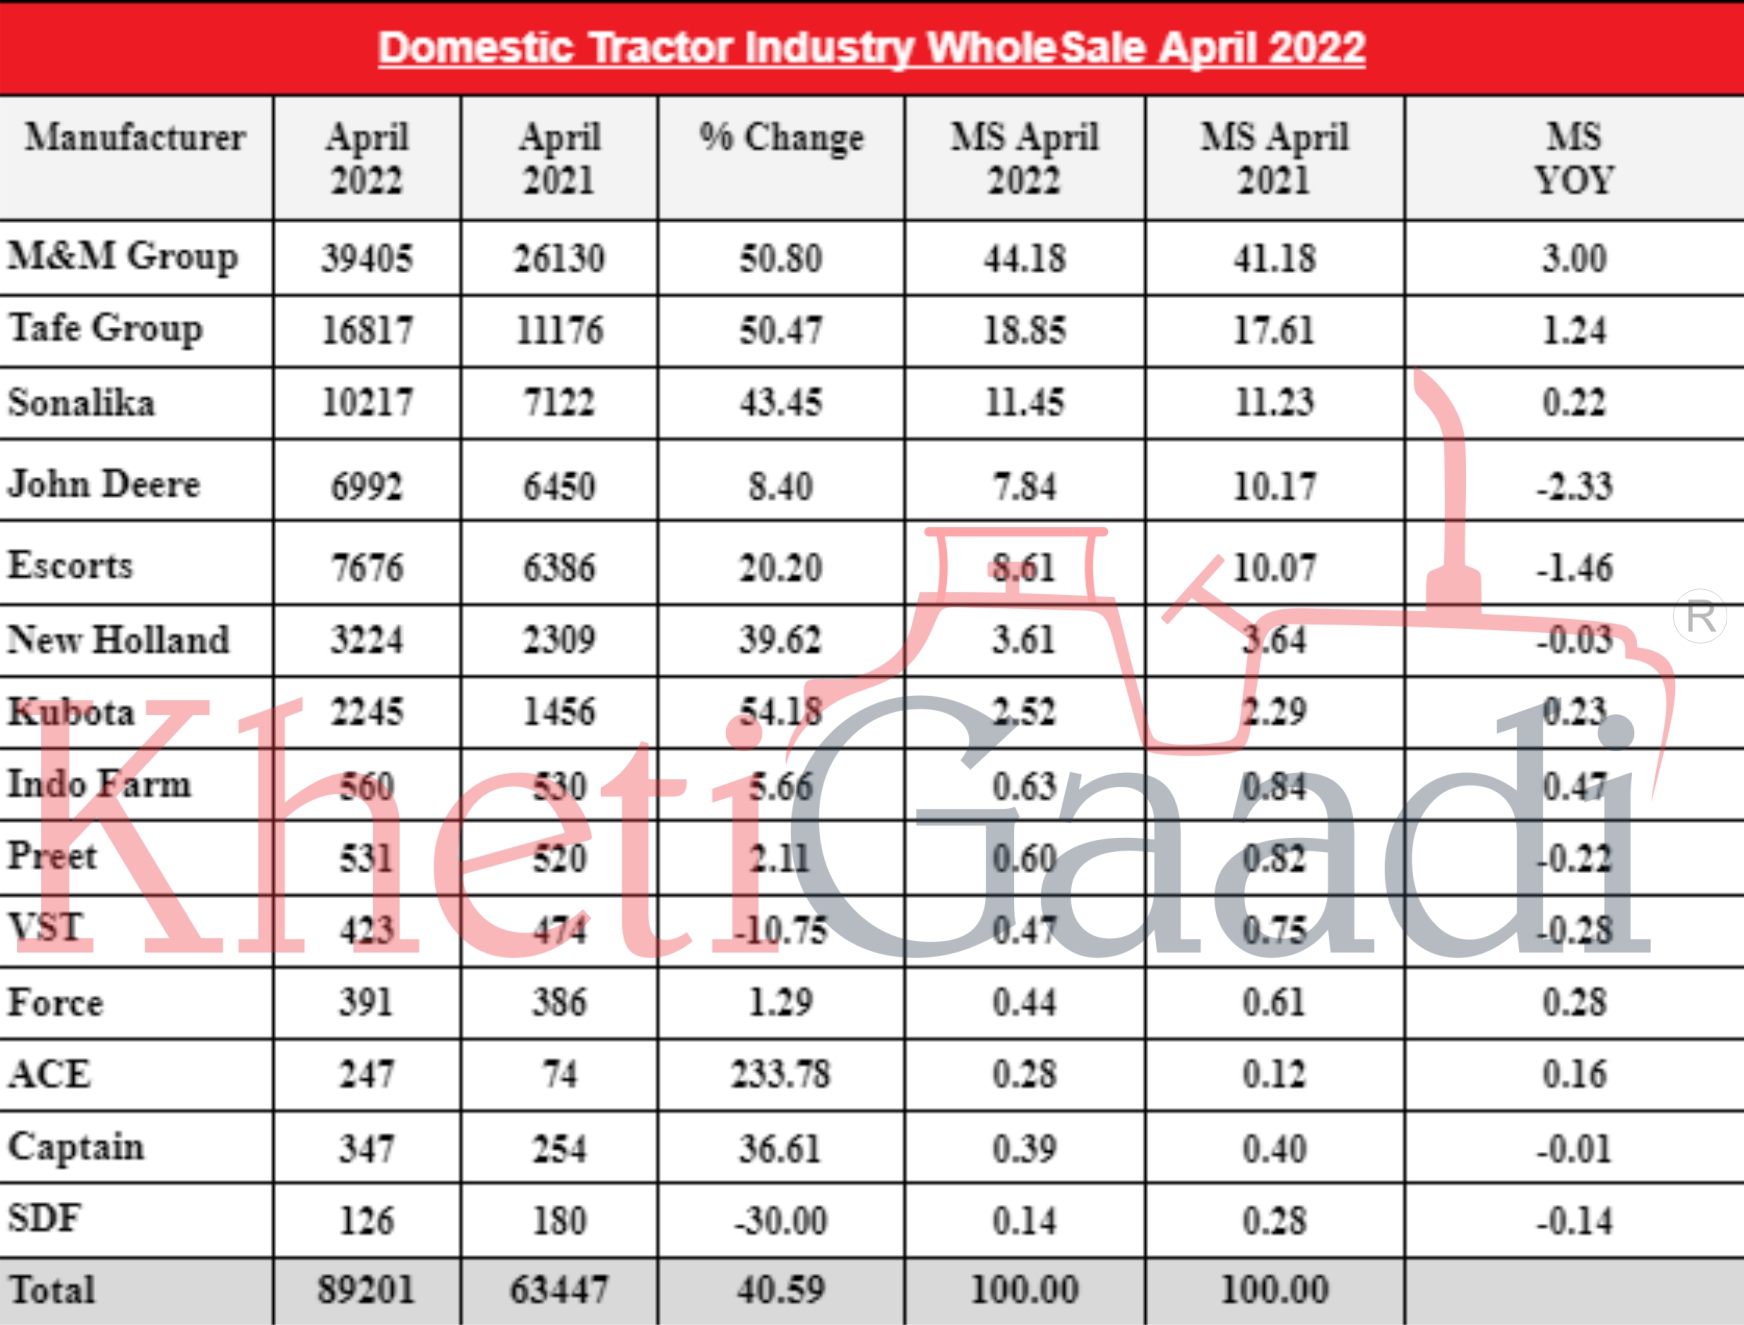 अप्रैल 22 में 89201 यूनिट बेचकर भारत में ट्रैक्टर की बिक्री में 40.6% की वृद्धि हुई